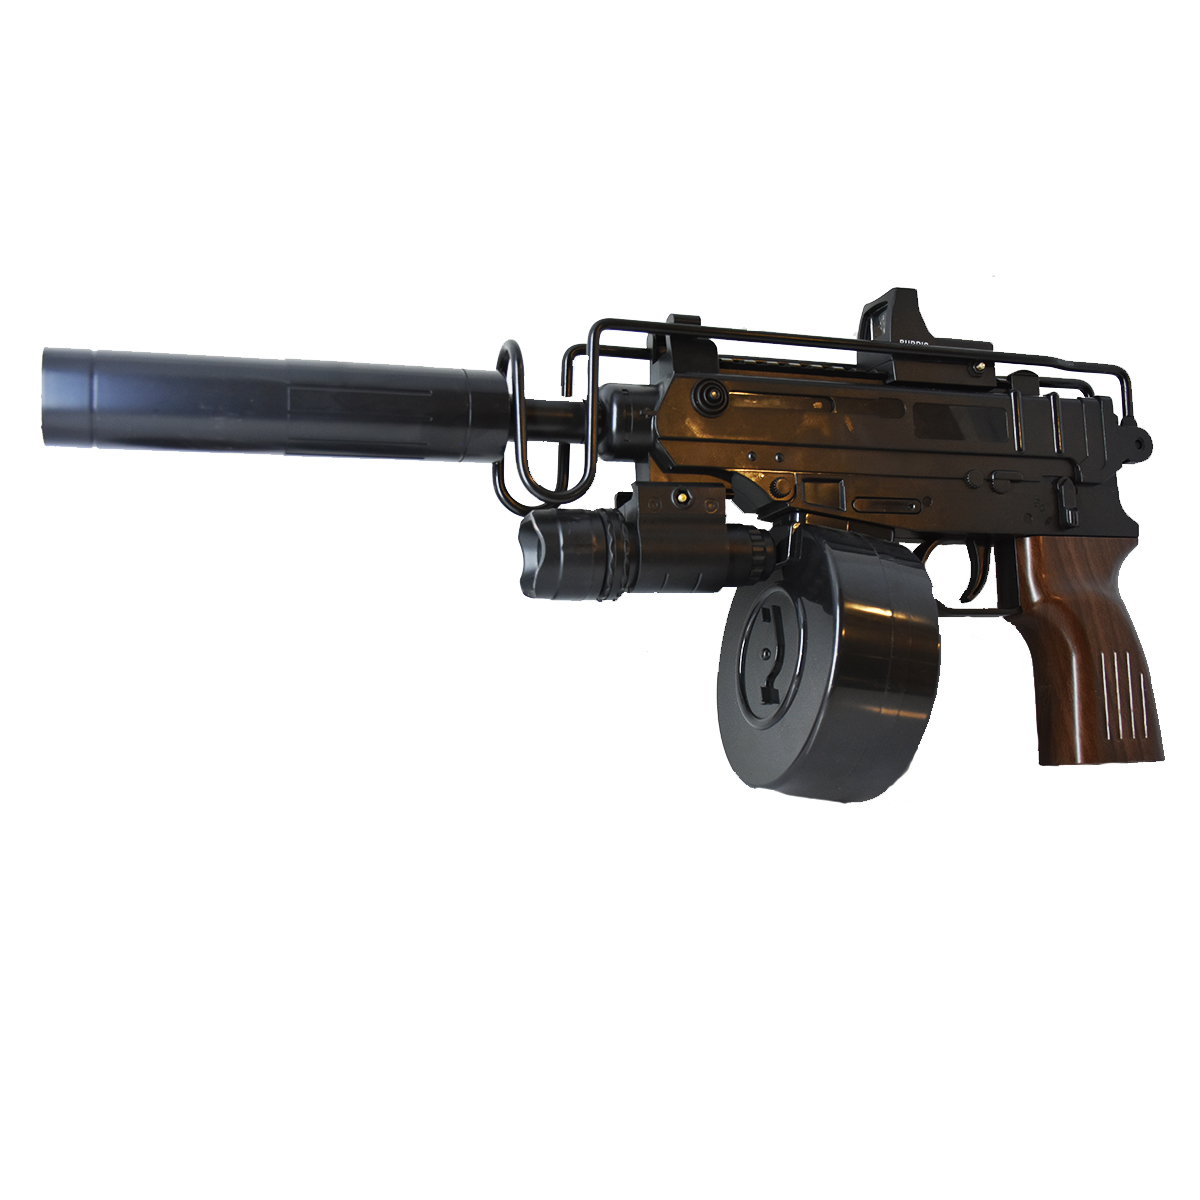 ست تفنگ بازی مدل کلاشینکف کد M4